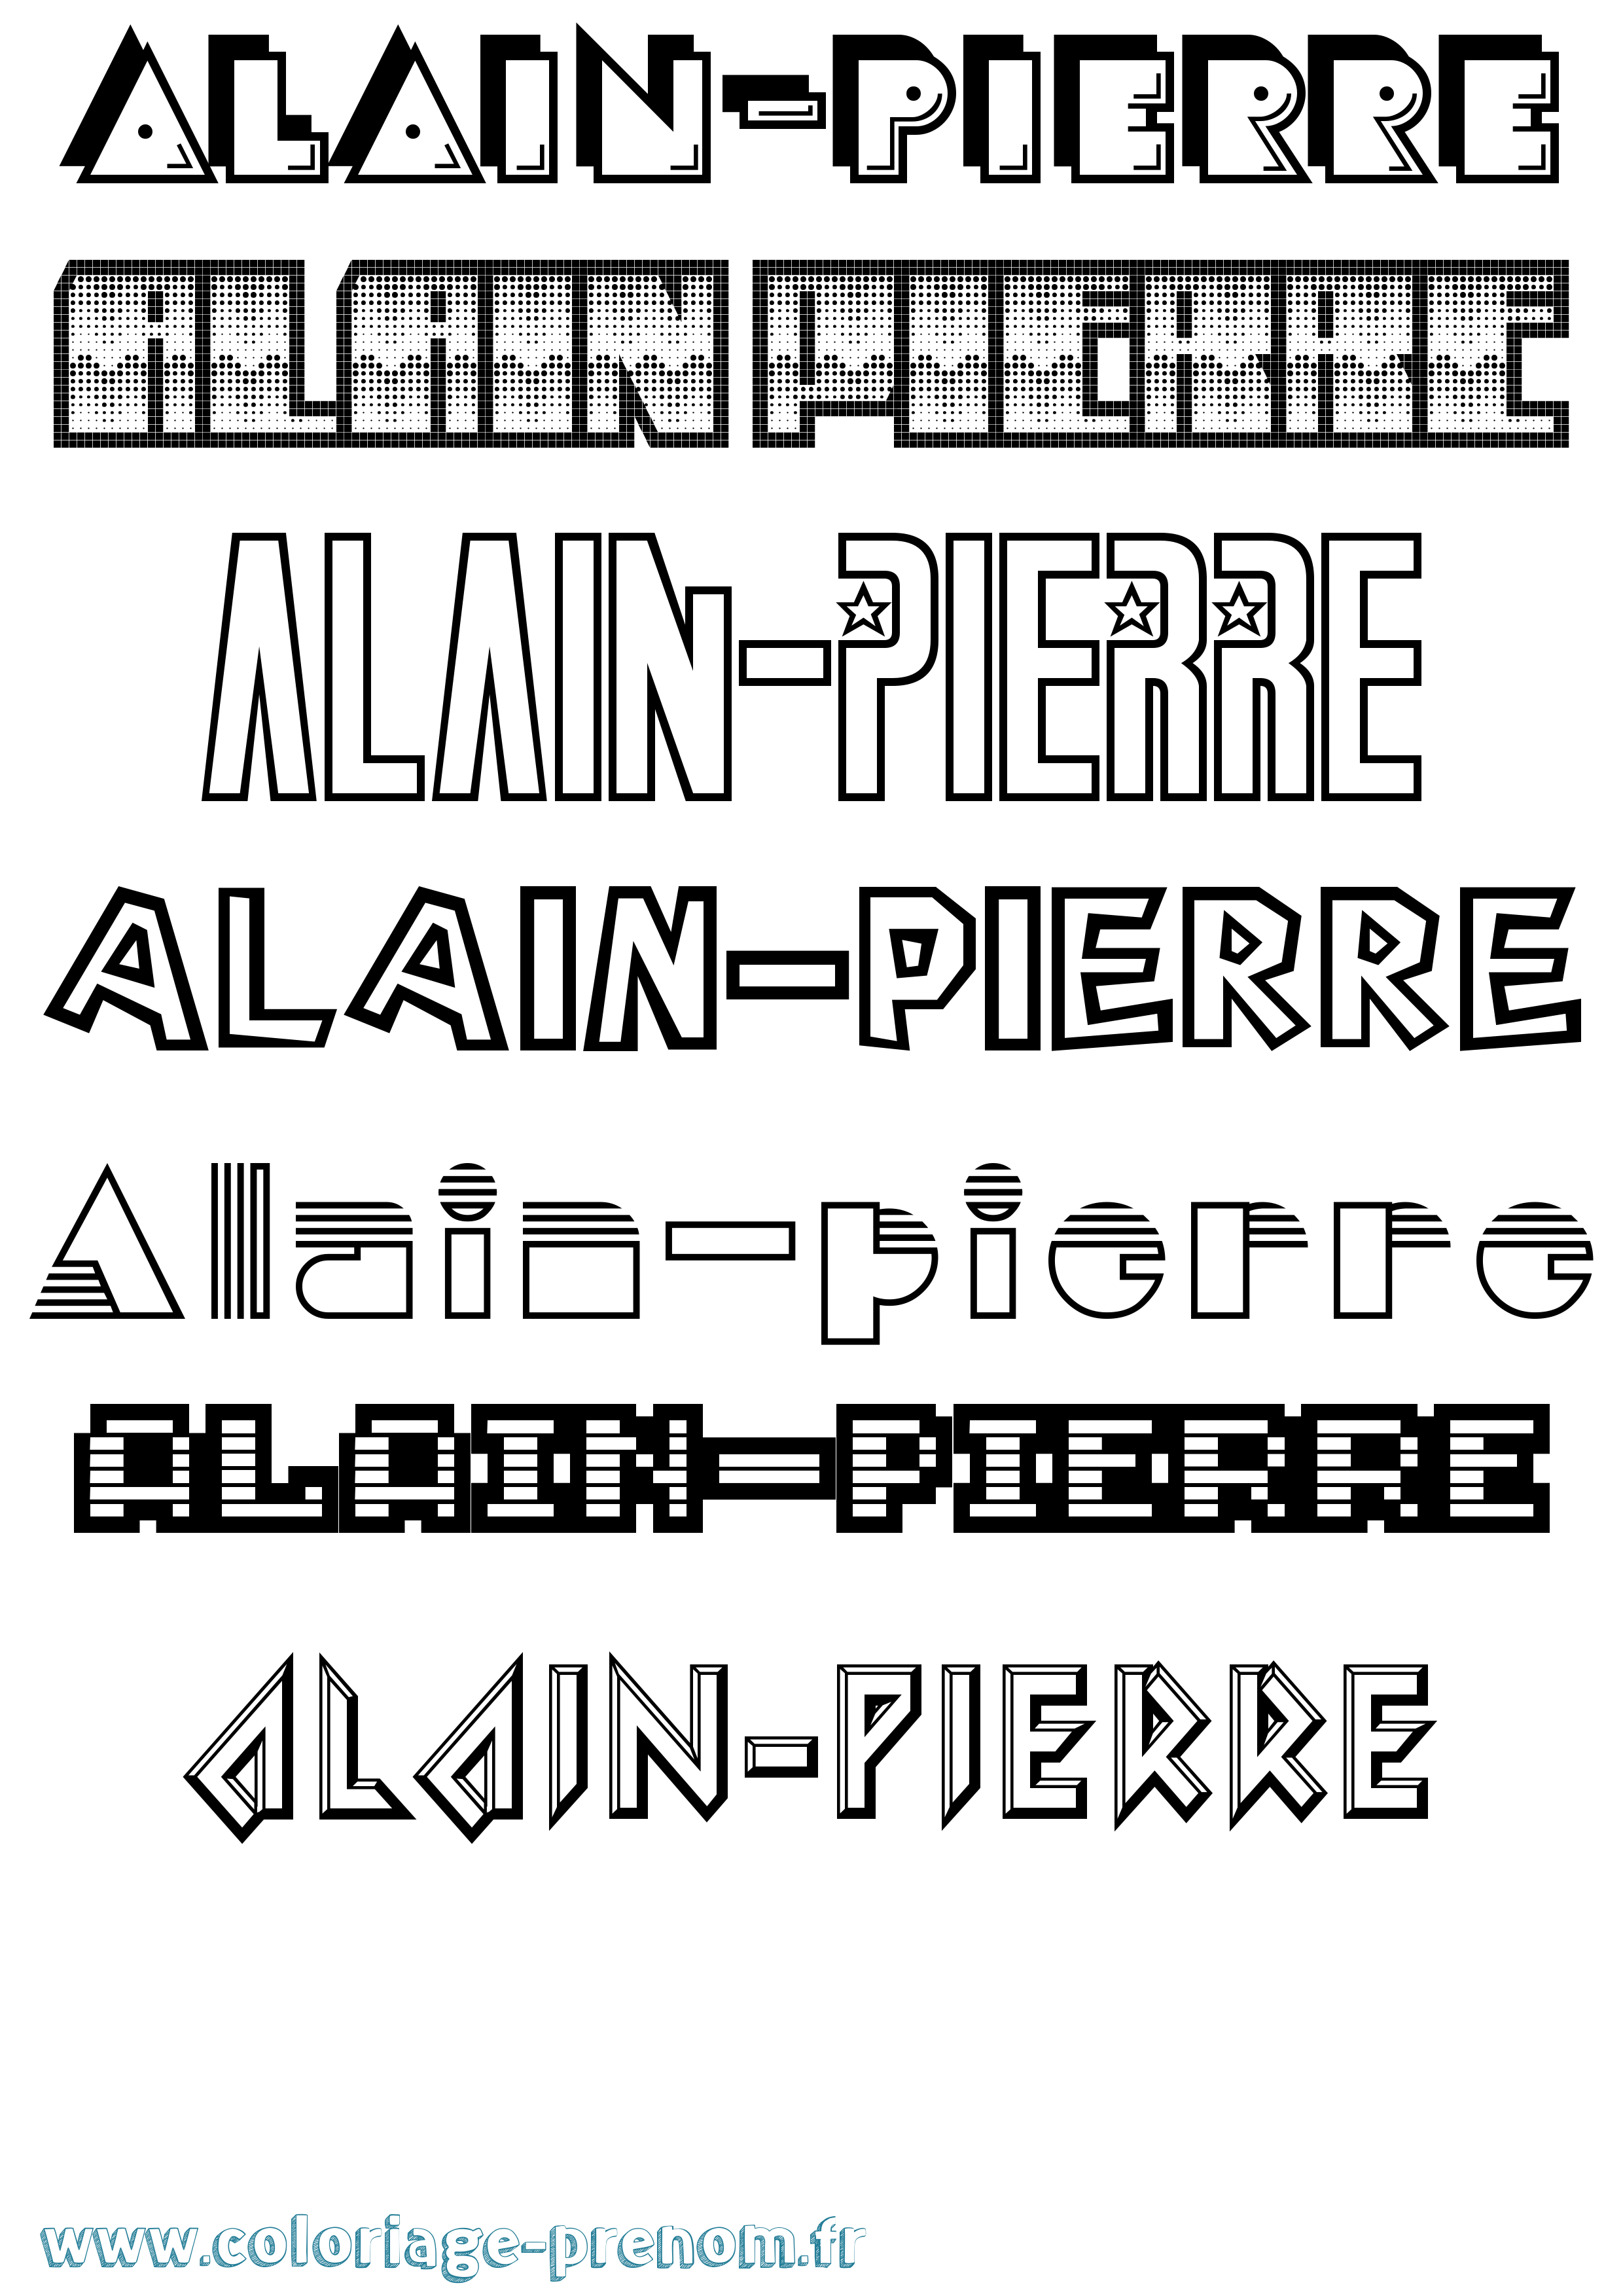 Coloriage prénom Alain-Pierre Jeux Vidéos